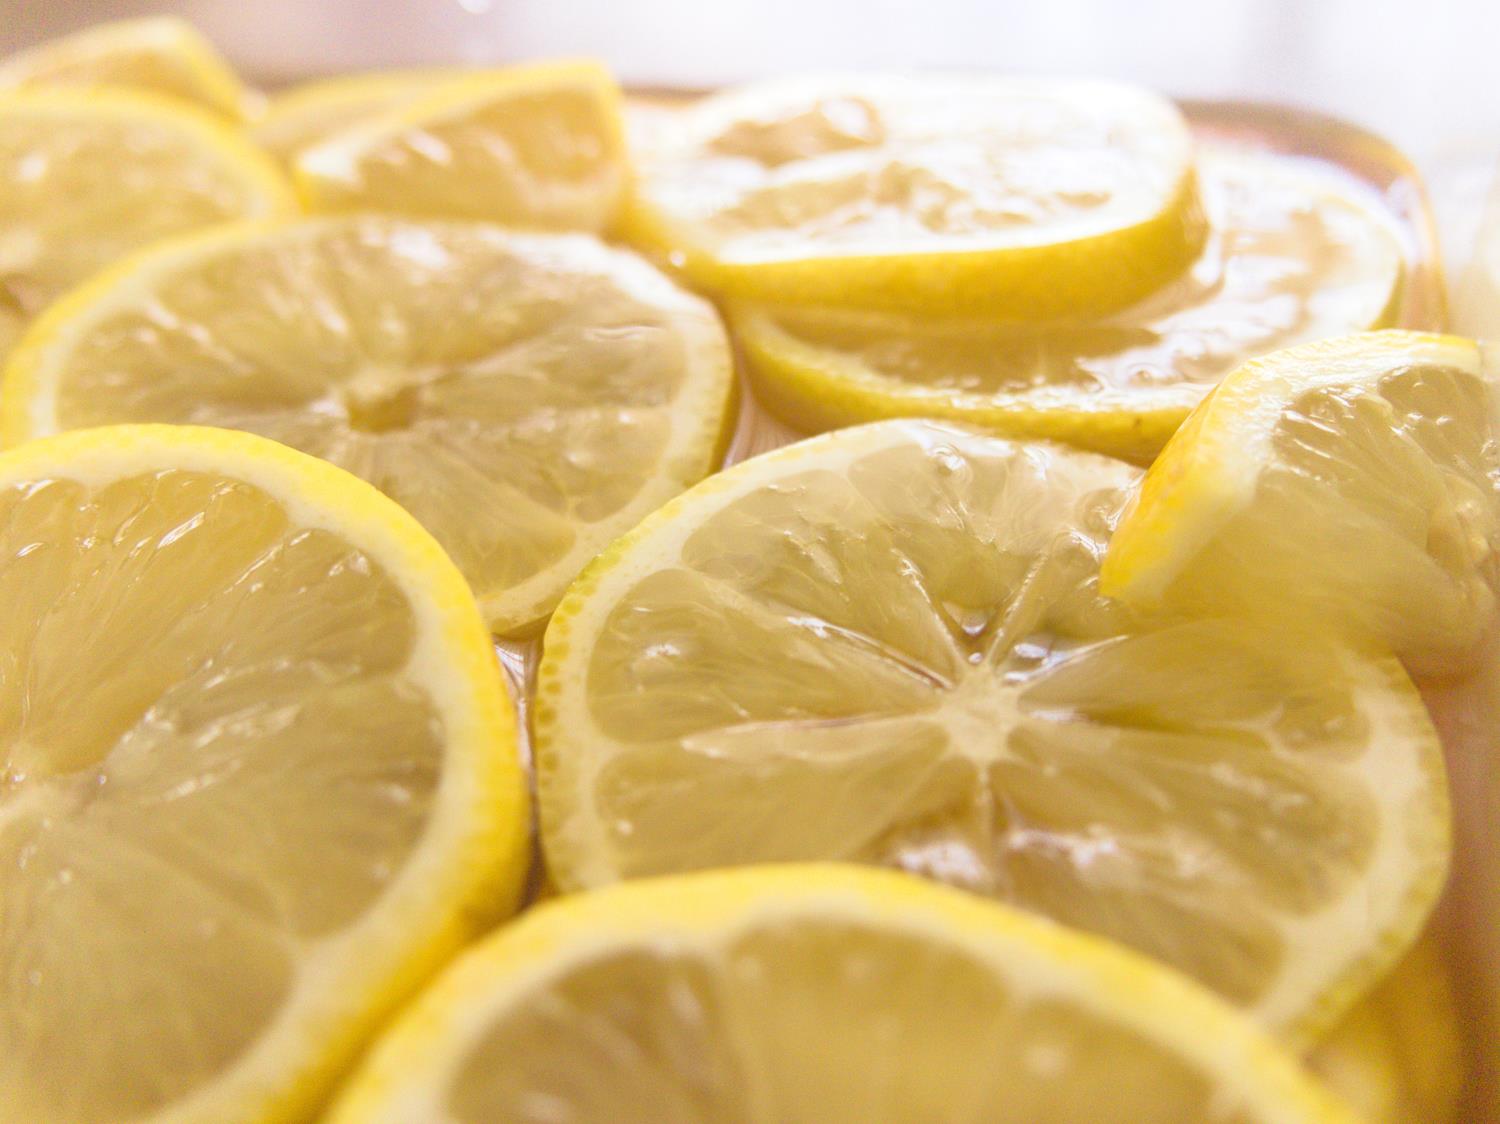 檸檬醋的檸檬如何處理,檸檬醋做法,檸檬醋